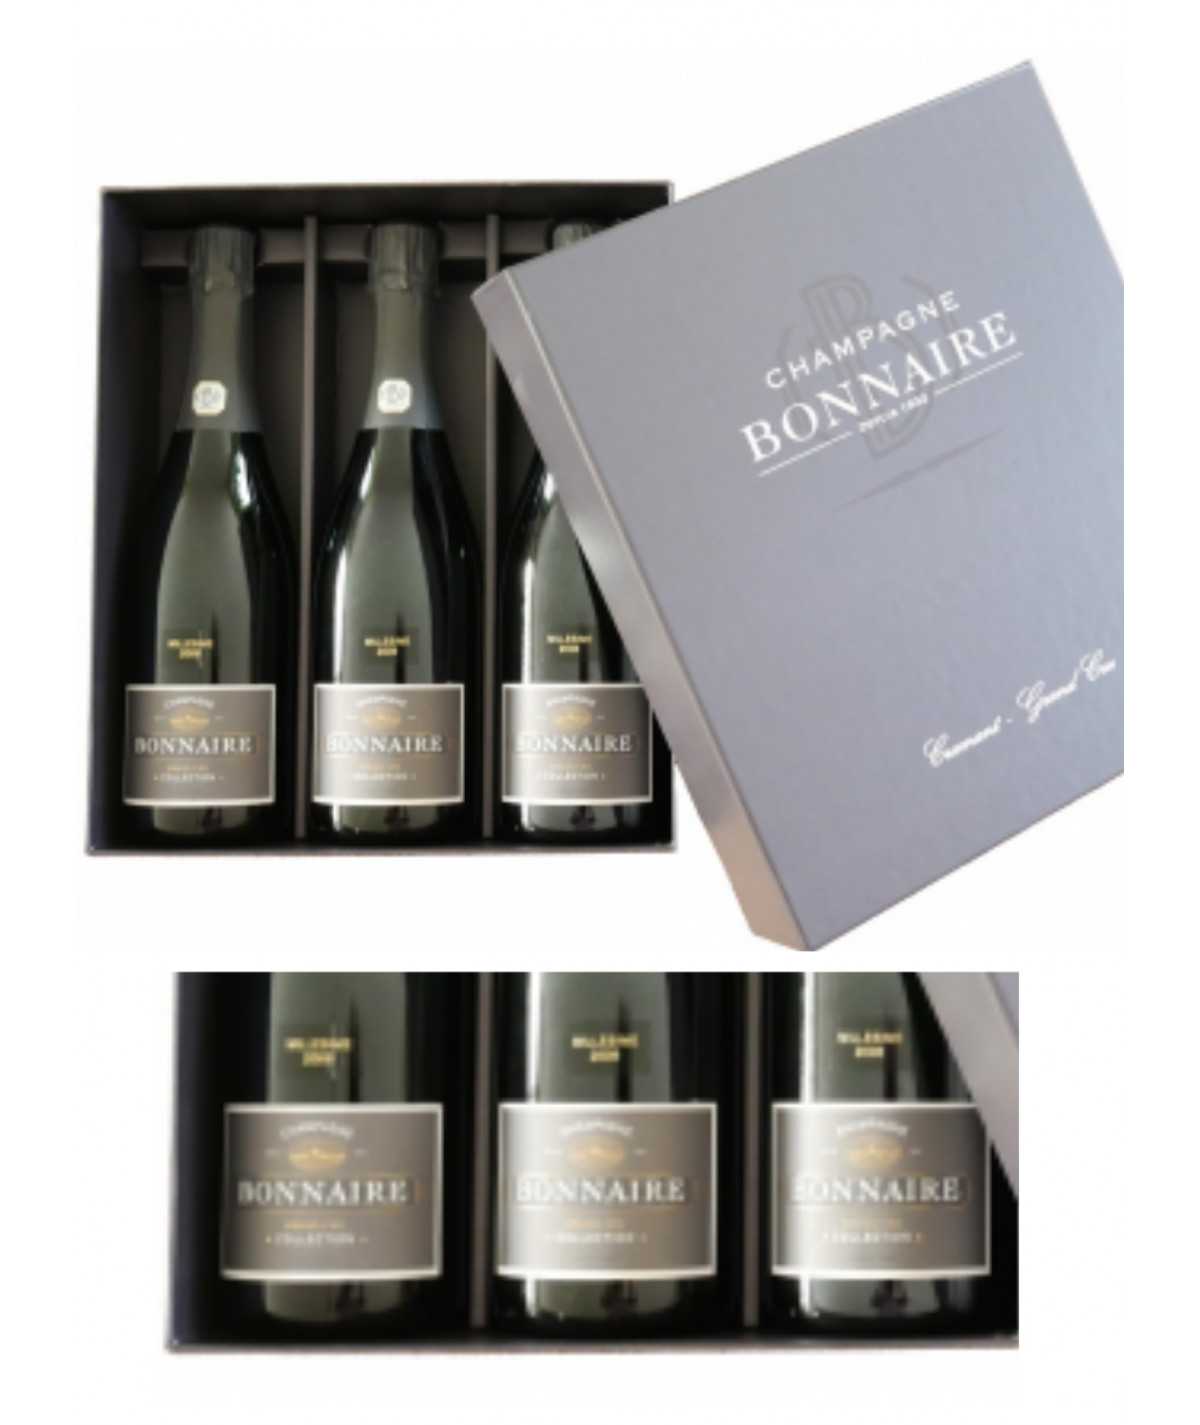 Champagne BONNAIRE Trilogie – Différentes Vinifications “Edition Limitée” 2008